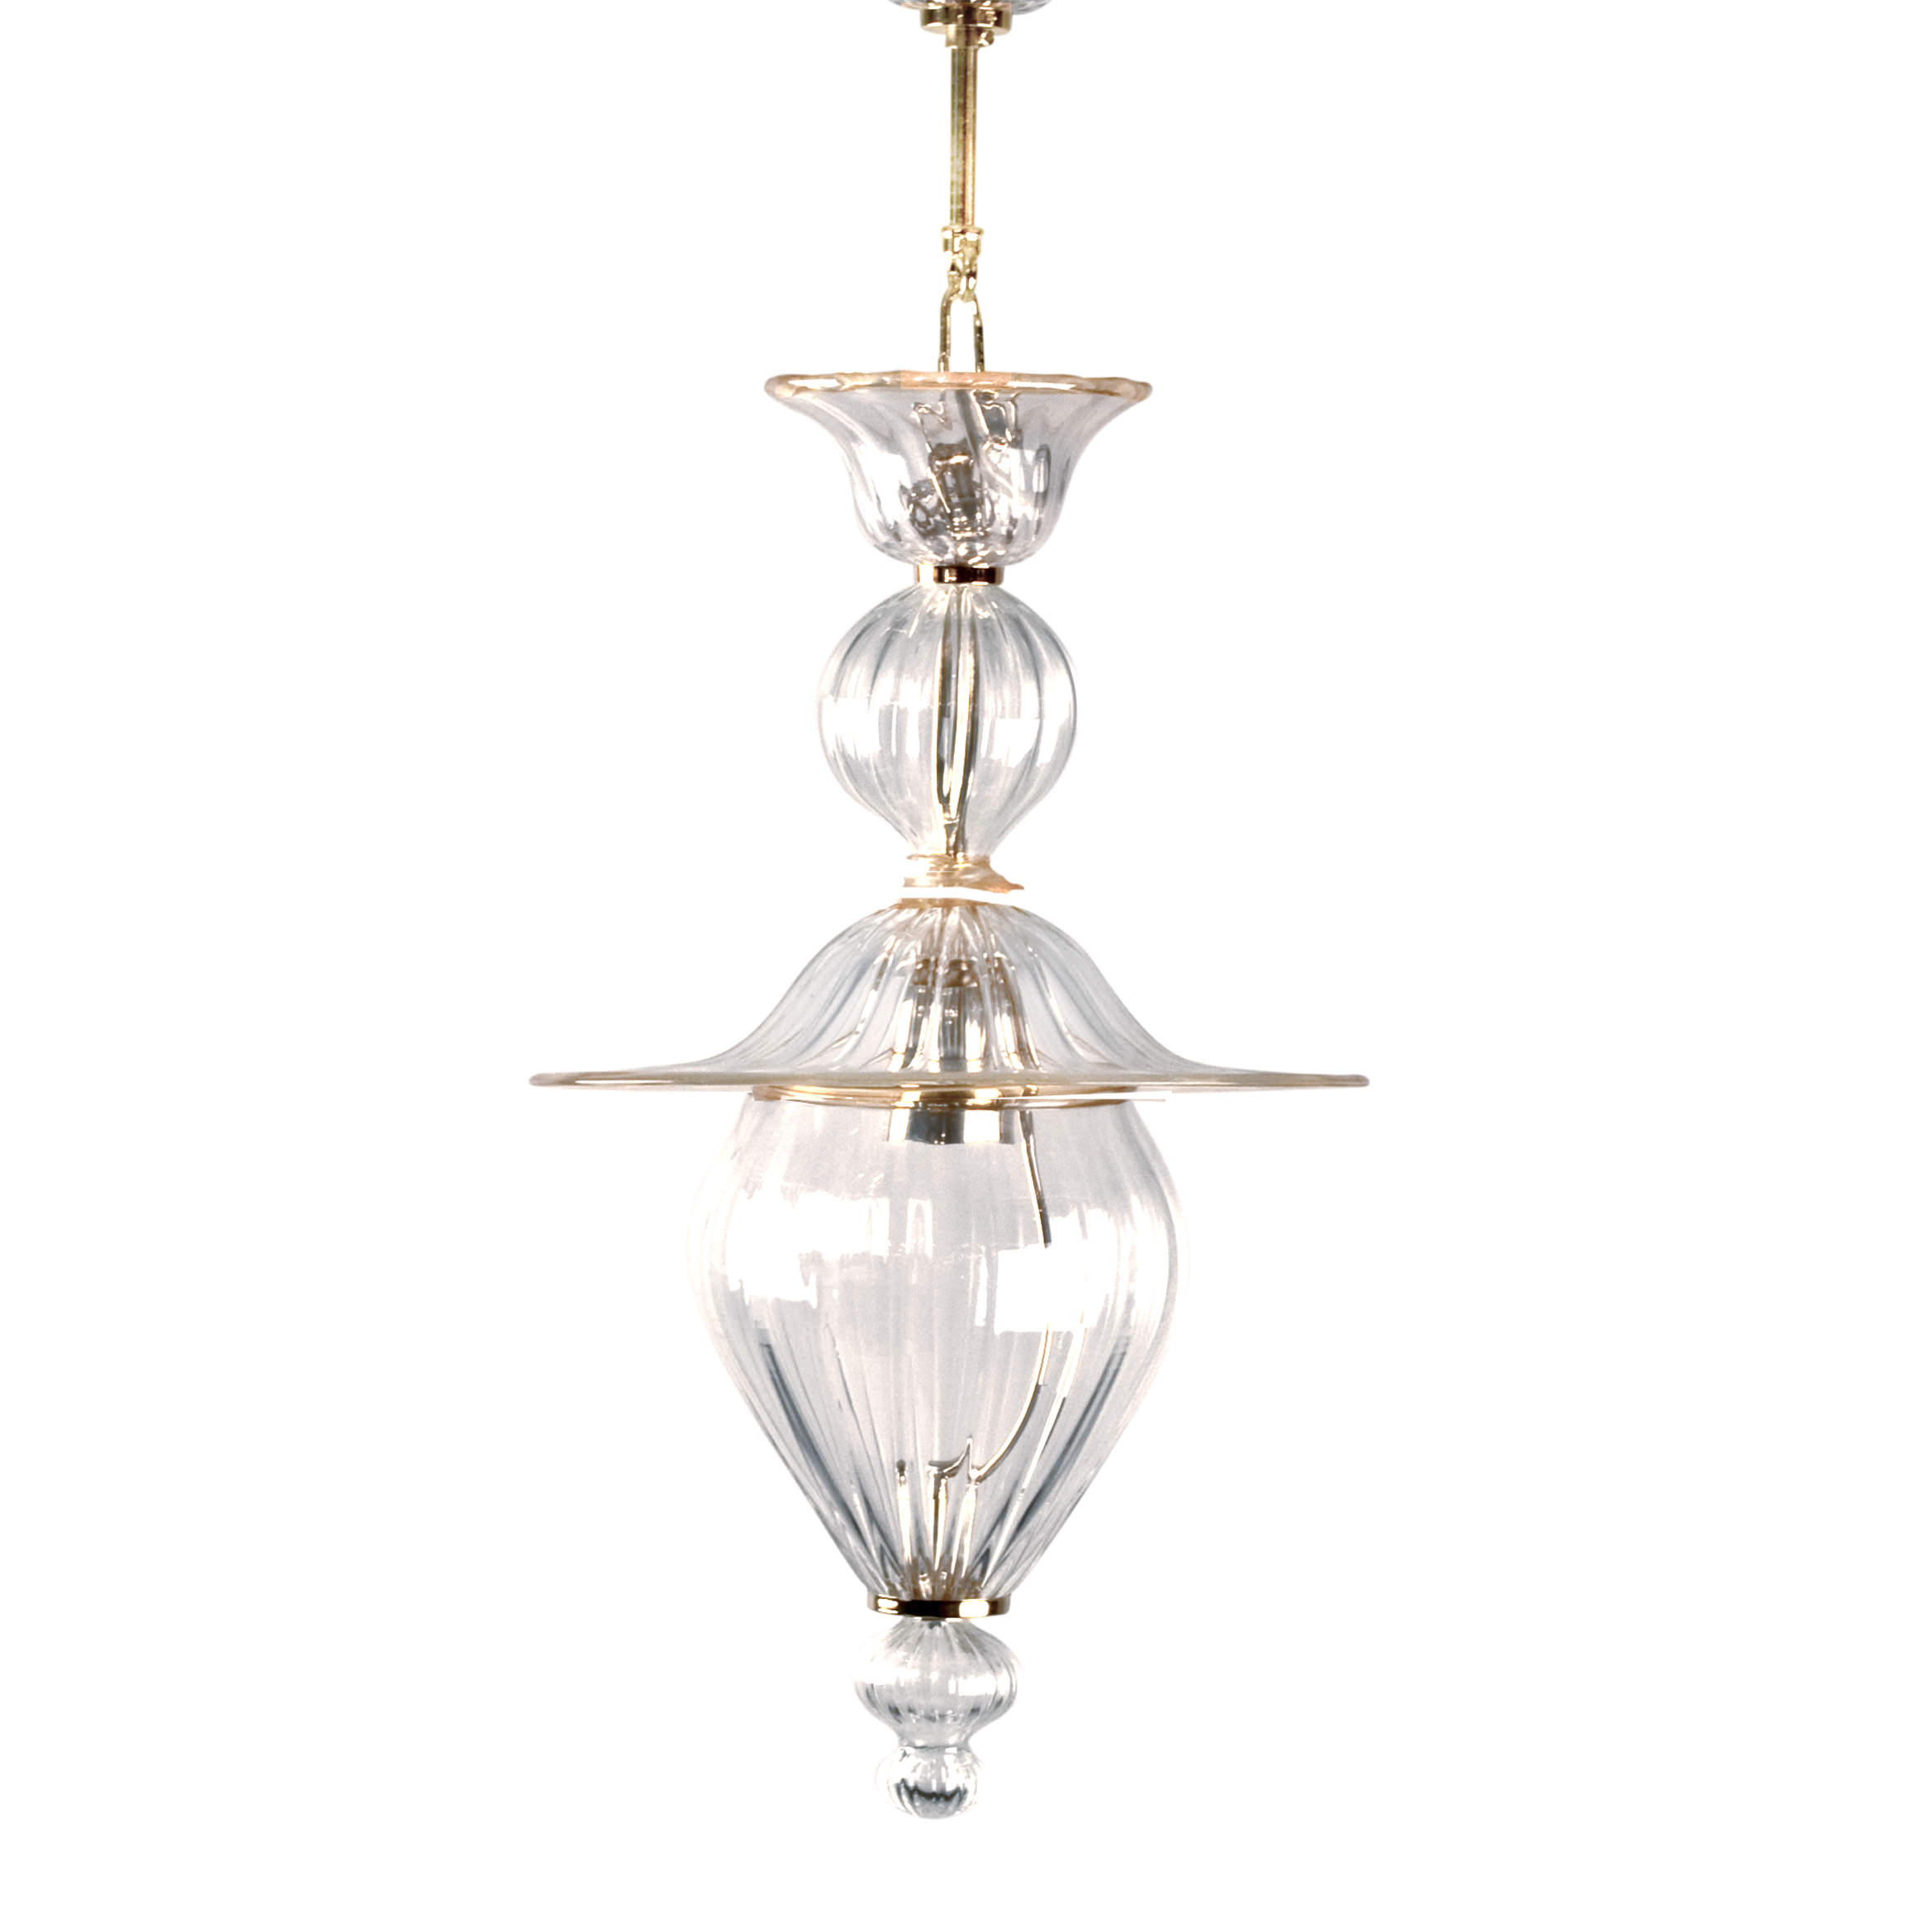 Купить Подвесной светильник Oriente Oval в интернет-магазине roooms.ru